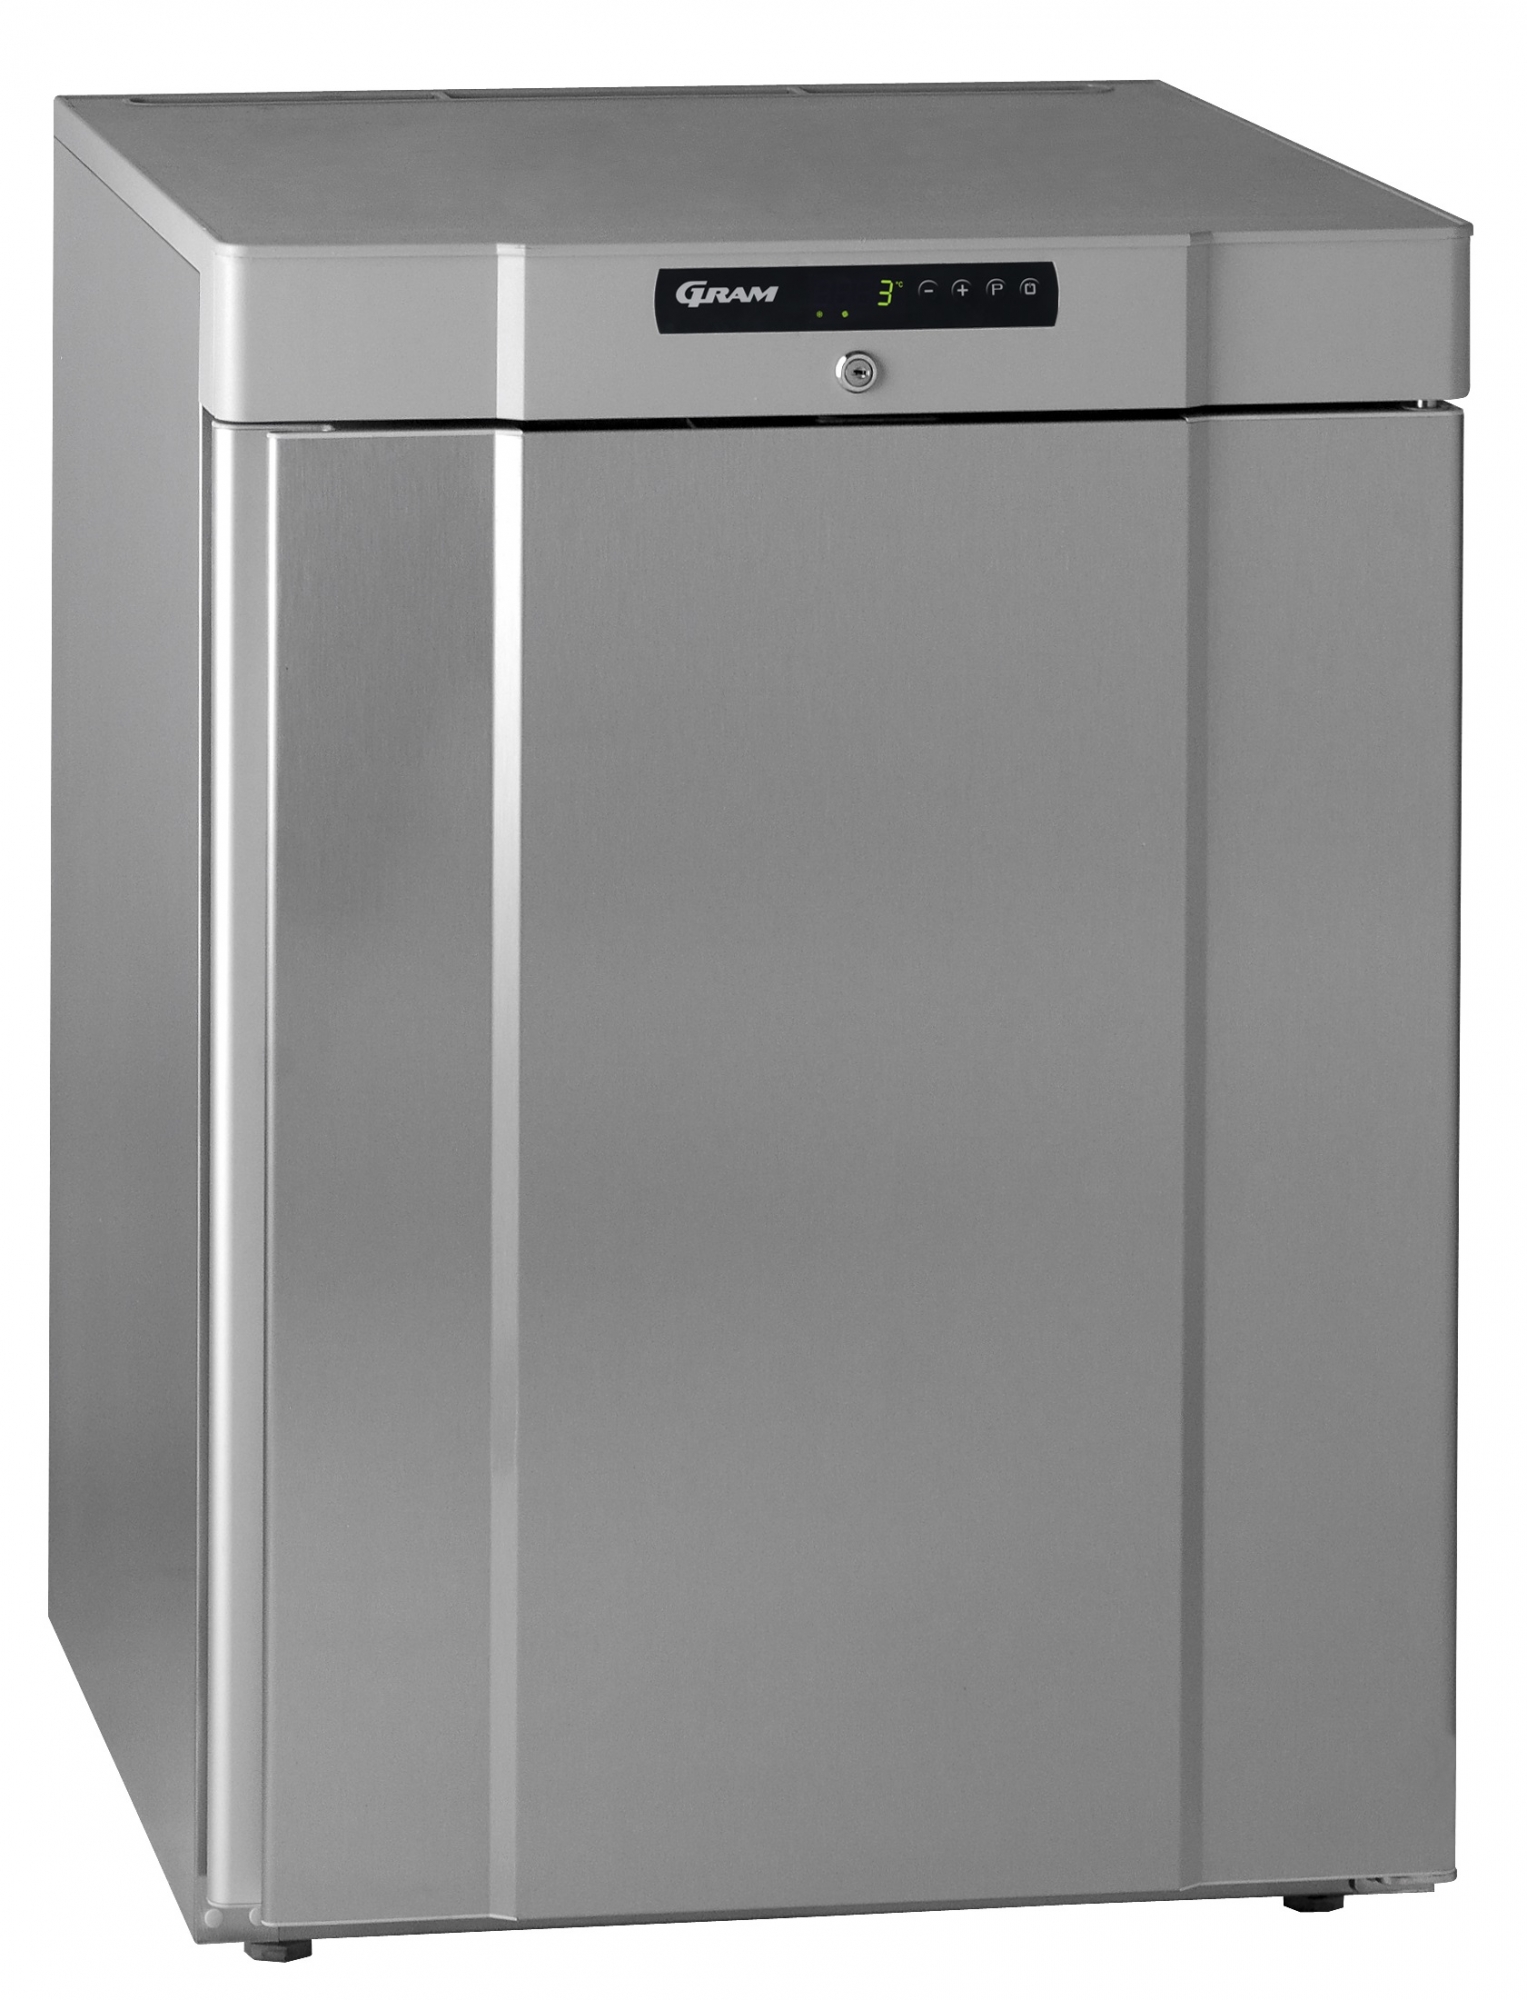 Gram Compact K 220 RG professionele tafelmodel koelkast